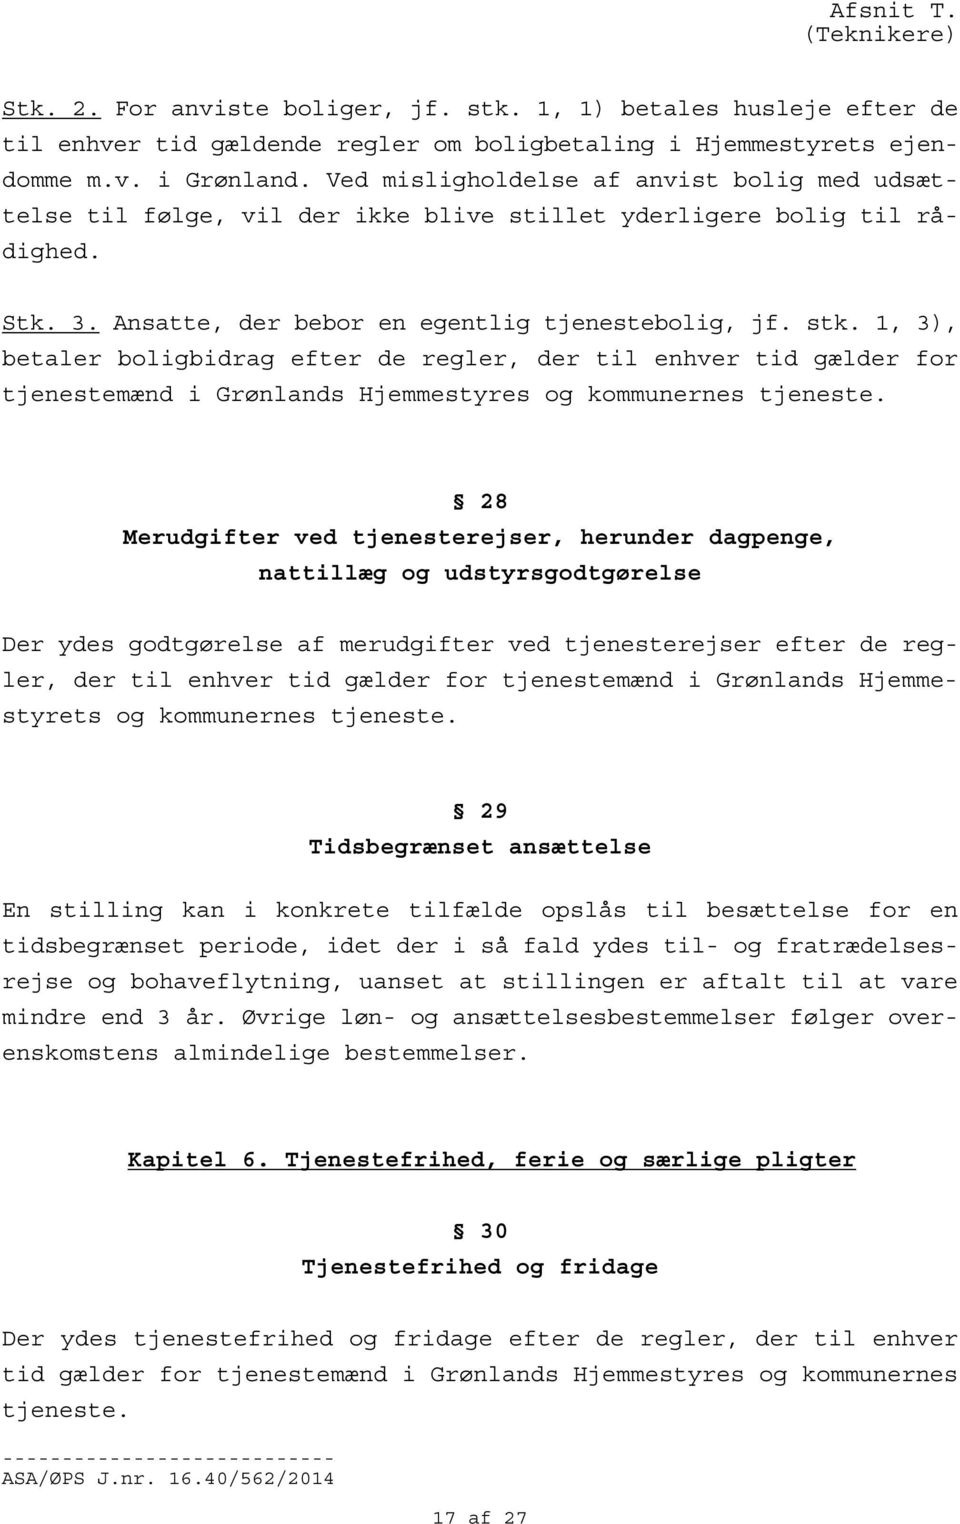 1, 3), betaler boligbidrag efter de regler, der til enhver tid gælder for tjenestemænd i Grønlands Hjemmestyres og kommunernes tjeneste.